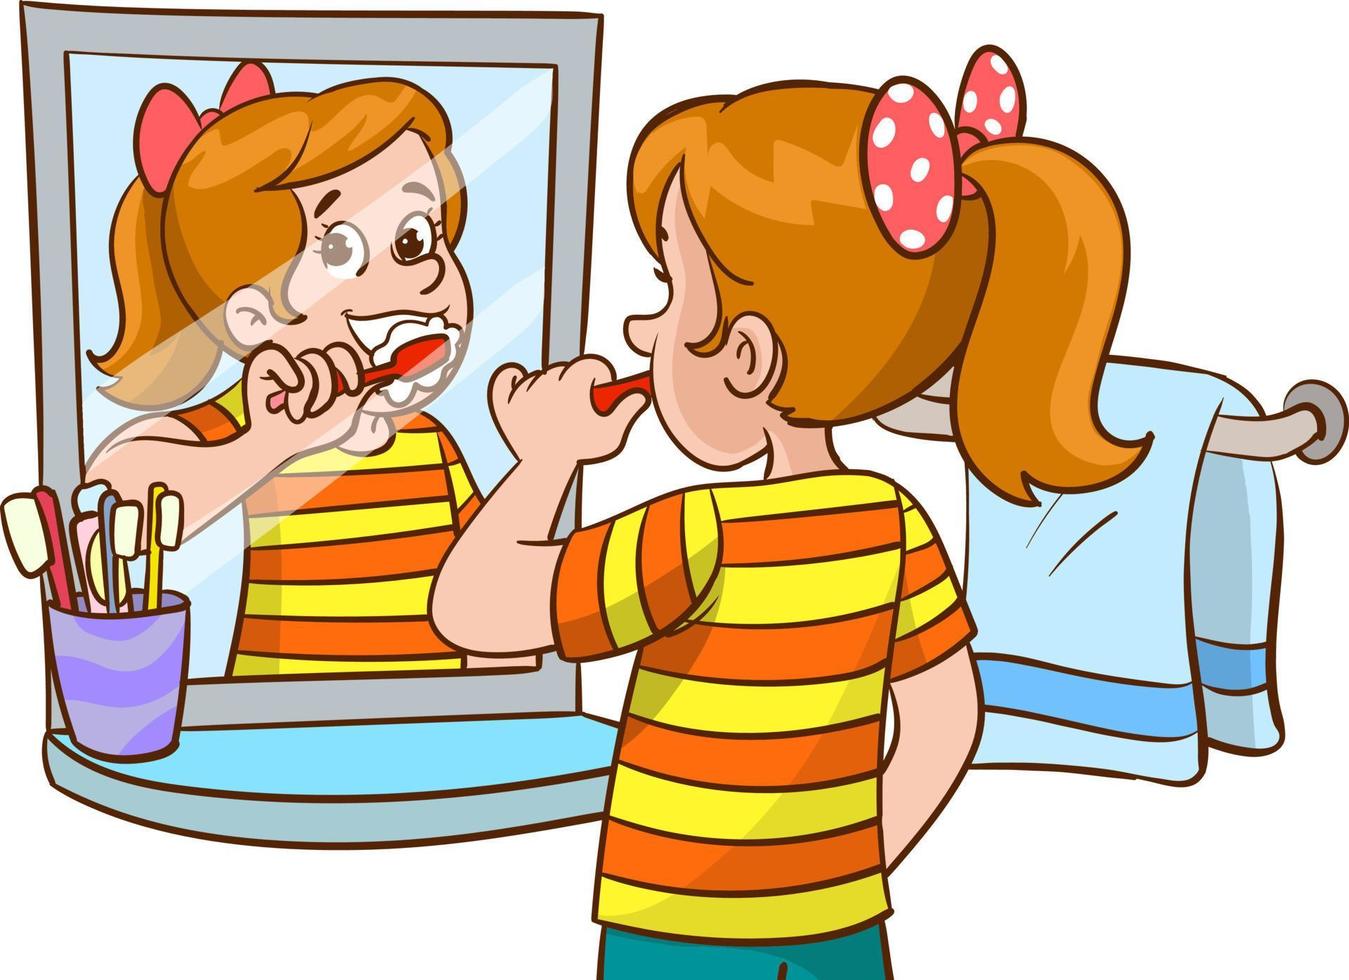 child brushing his teeth cartoon vector